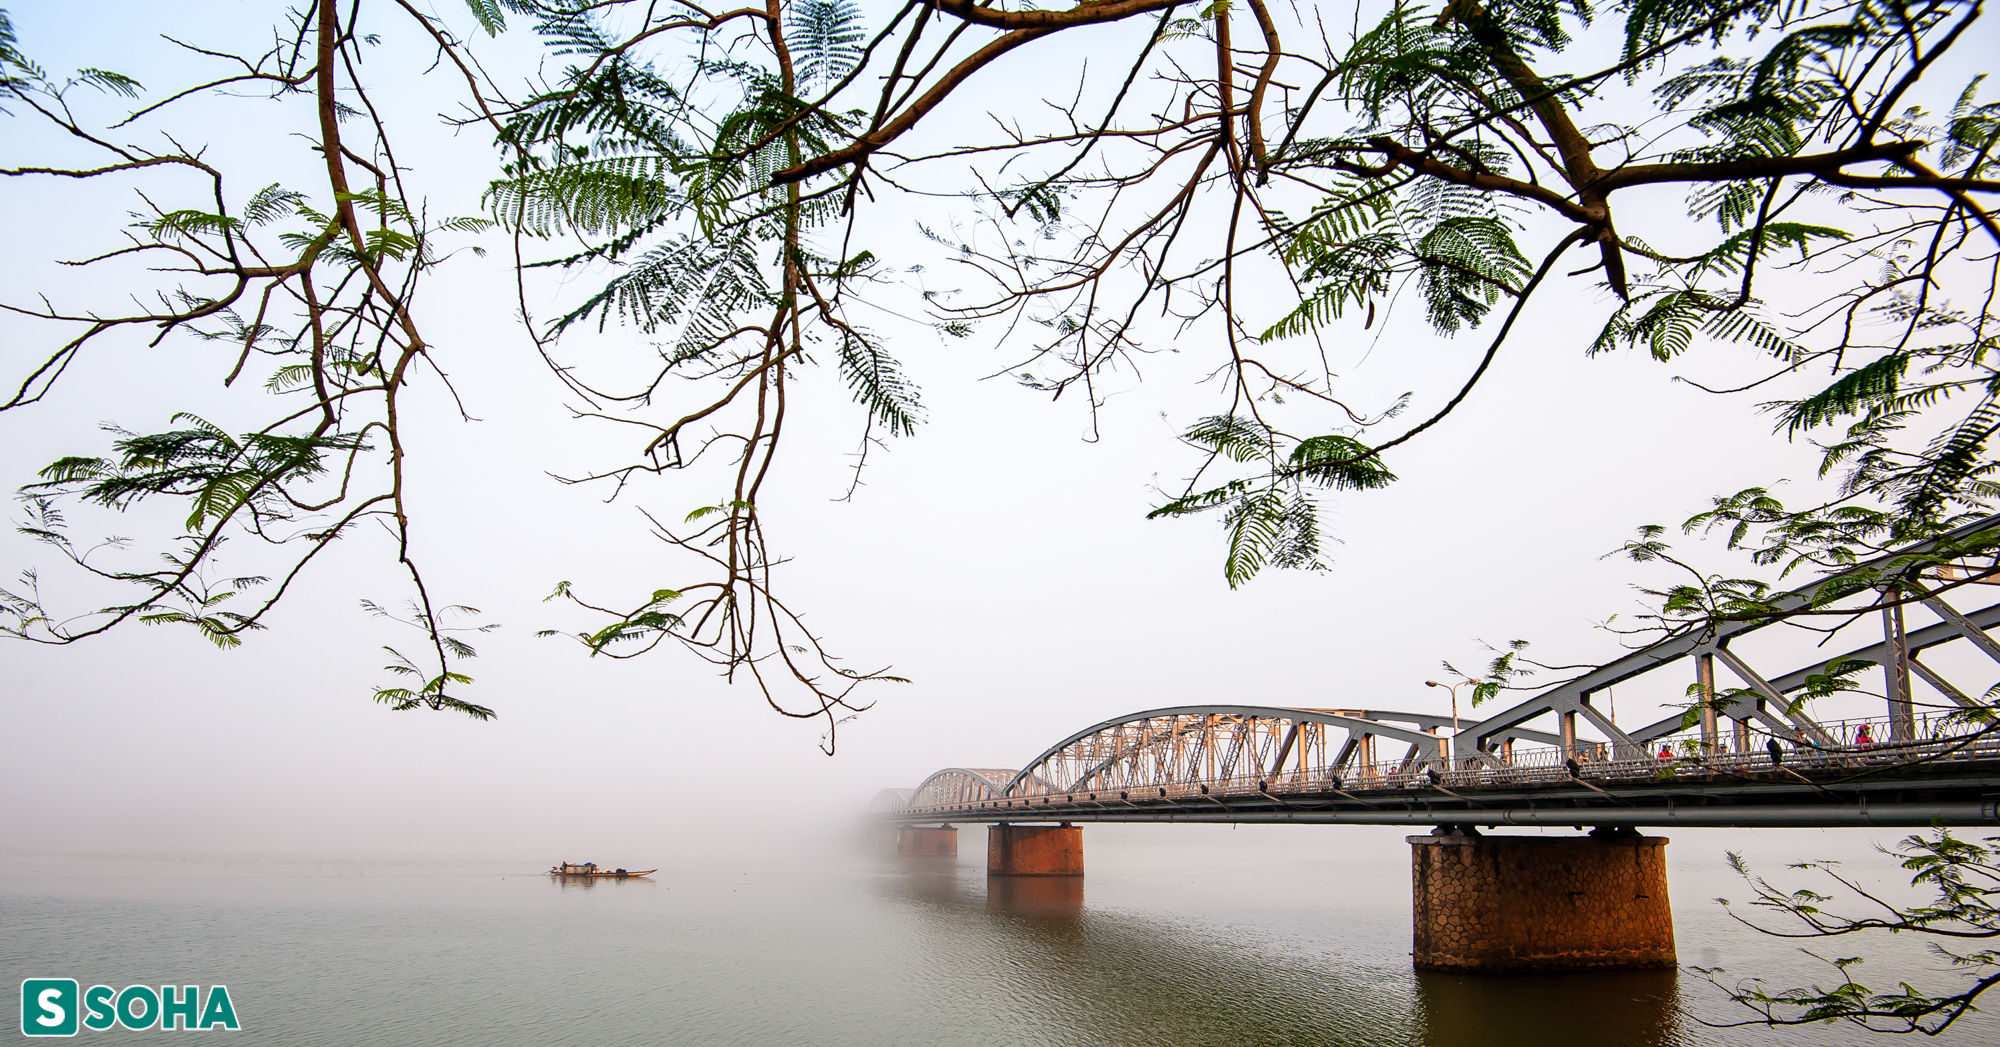 Những cây cầu có một không hai ở Huế, cổ kính hay hiện đại đều đẹp rụng tim - Ảnh 1.